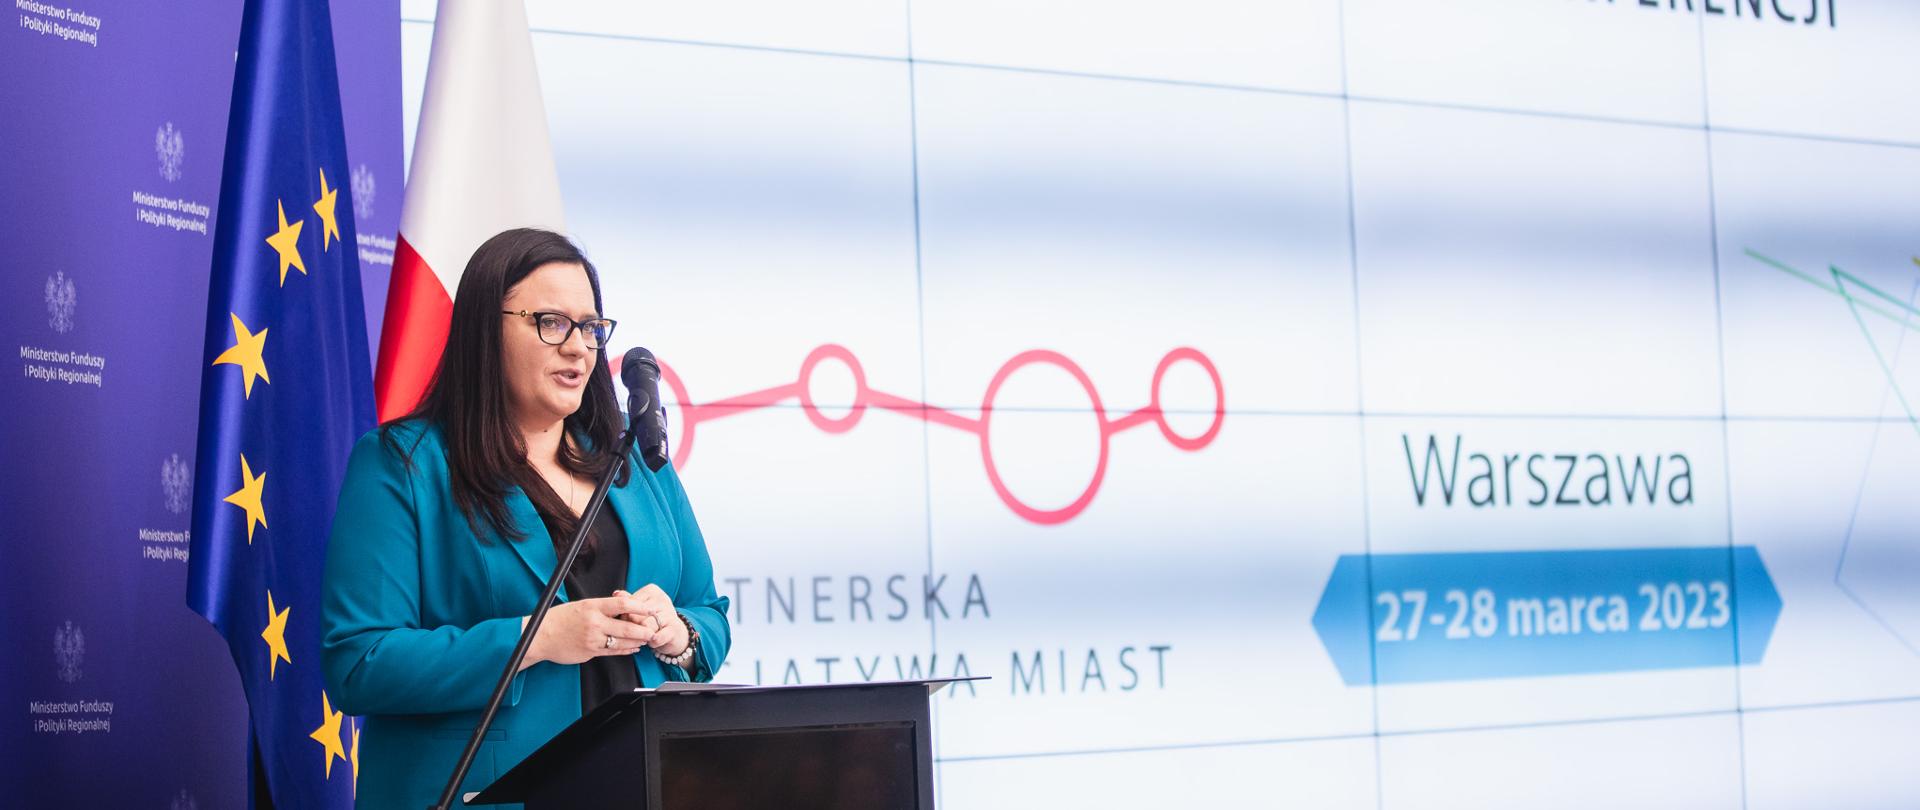 Wiceminister Małgorzata Jarosińska-Jedynak w sali konferencyjnej stoi w mównicy z mikrofonem. Za nią ekran z napisem: "Partnerska Inicjatywa Miast" oraz flagi Polski i UE.